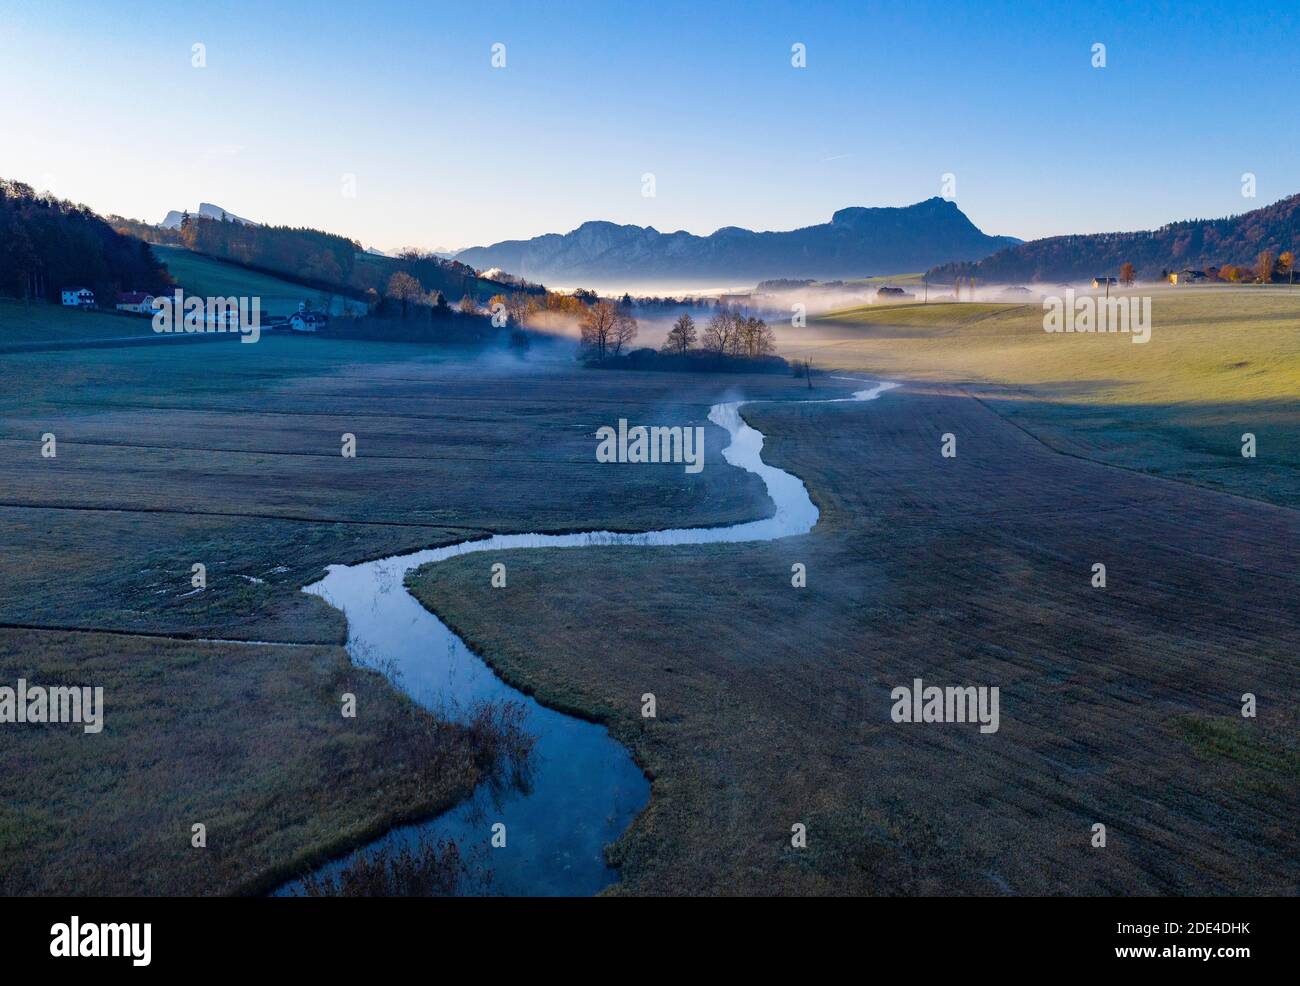 Deflusso della Zellerache dal lago Irrsee con vista sulla Mondseeland, nebbia a terra, dall'alto, prato bagnato, colpo di drone, vista aerea Foto Stock